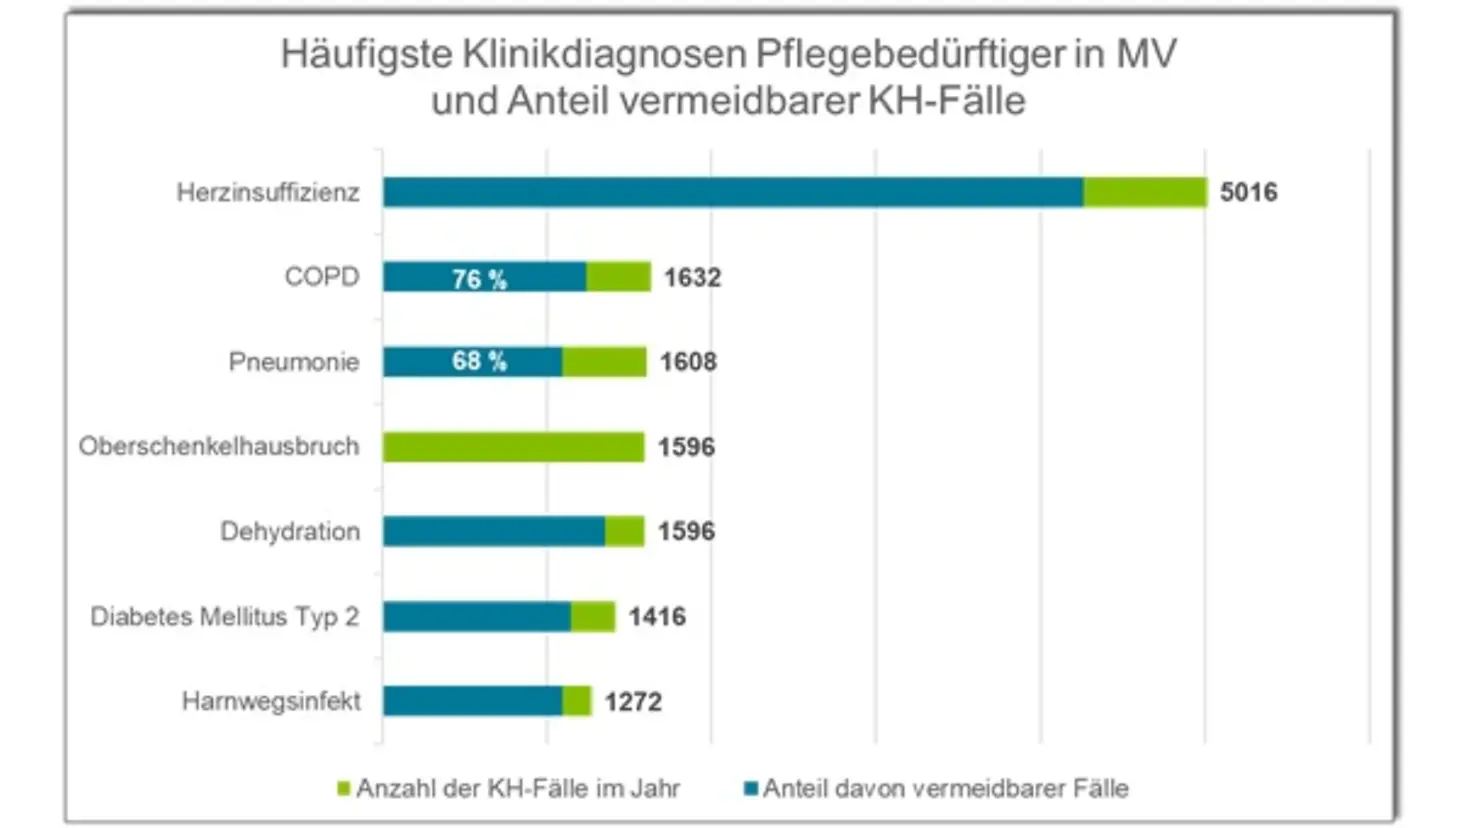 Grafik zu den häufigsten Klinikdiagnosen Pflegebedürftiger in Mecklenburg-Vorpommern